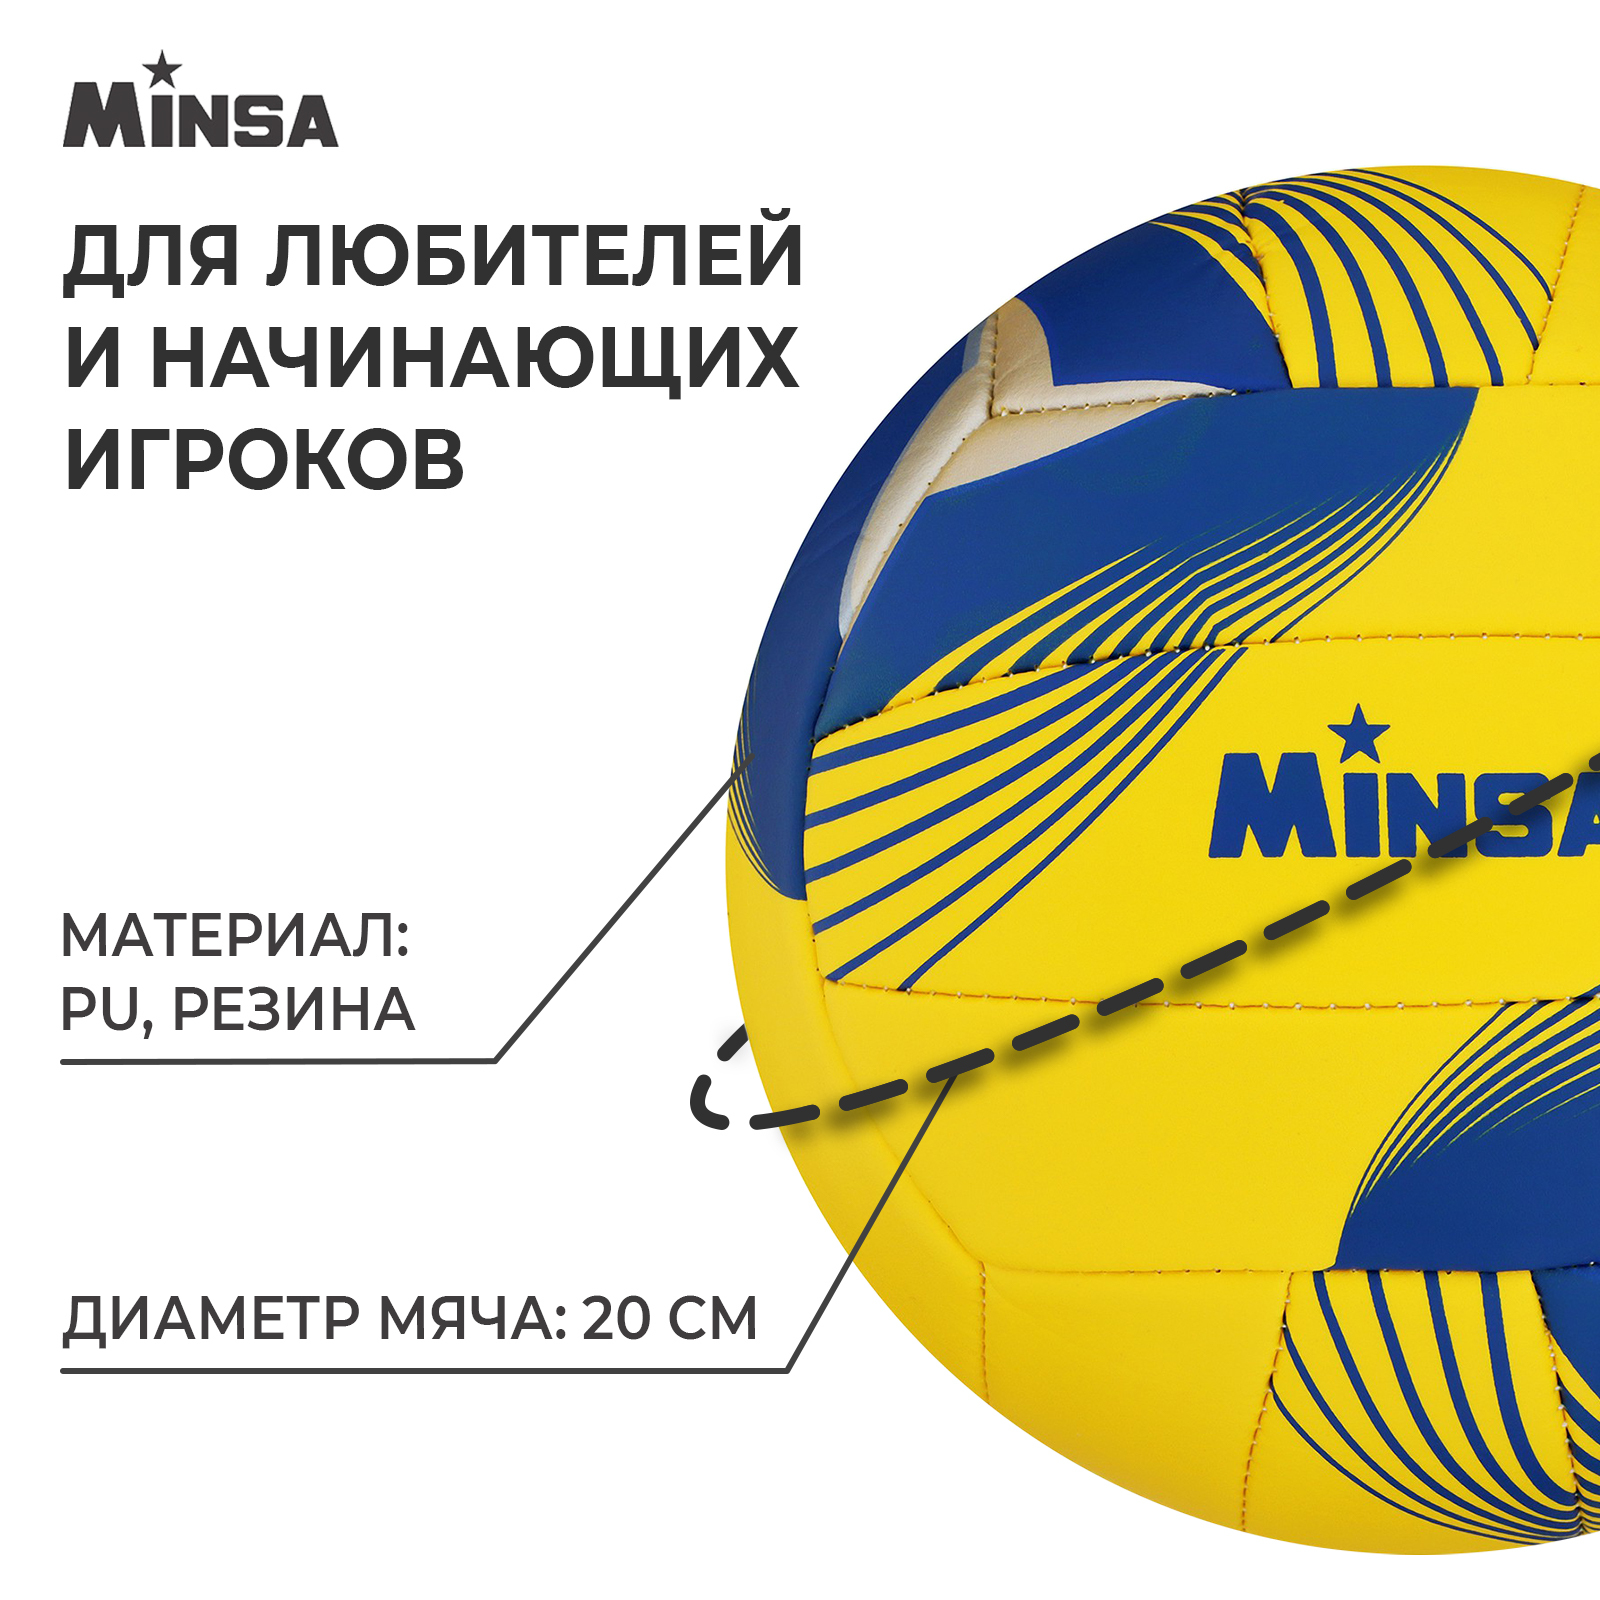 Мяч волейбольный MINSA, PU, машинная сшивка, 18 панелей, р. 5, 7560493   